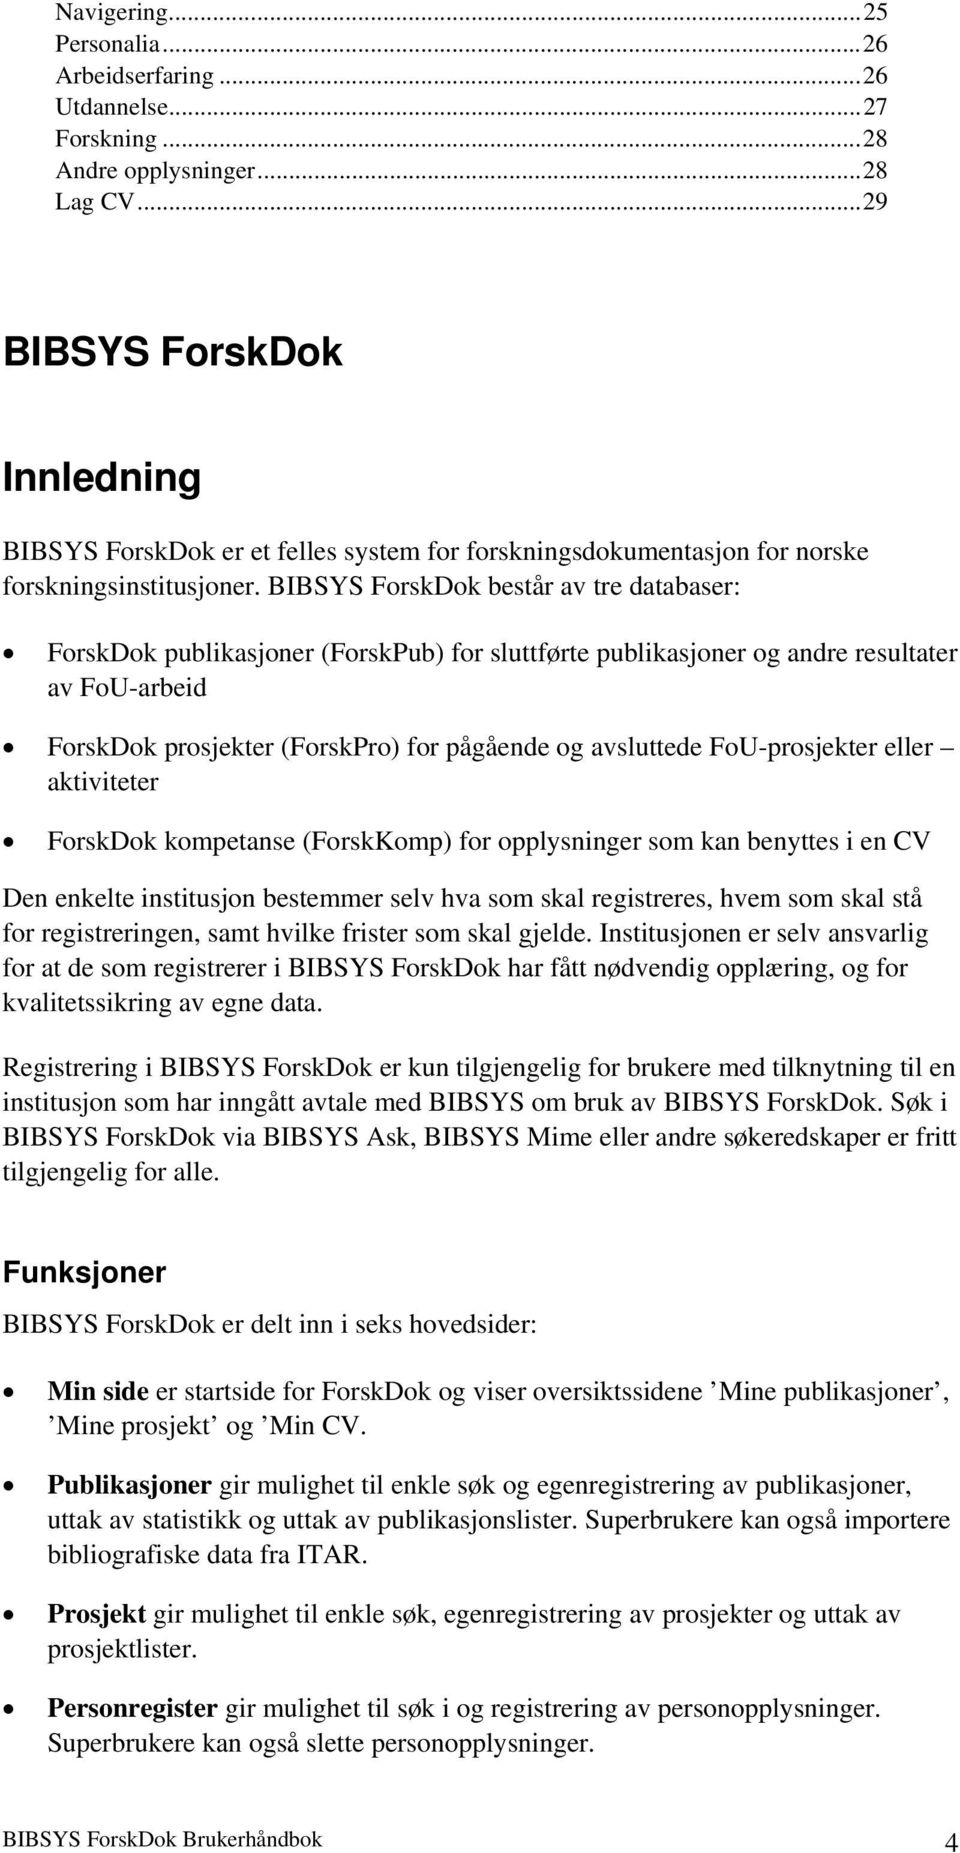 BIBSYS ForskDok består av tre databaser: ForskDok publikasjoner (ForskPub) for sluttførte publikasjoner og andre resultater av FoU-arbeid ForskDok prosjekter (ForskPro) for pågående og avsluttede